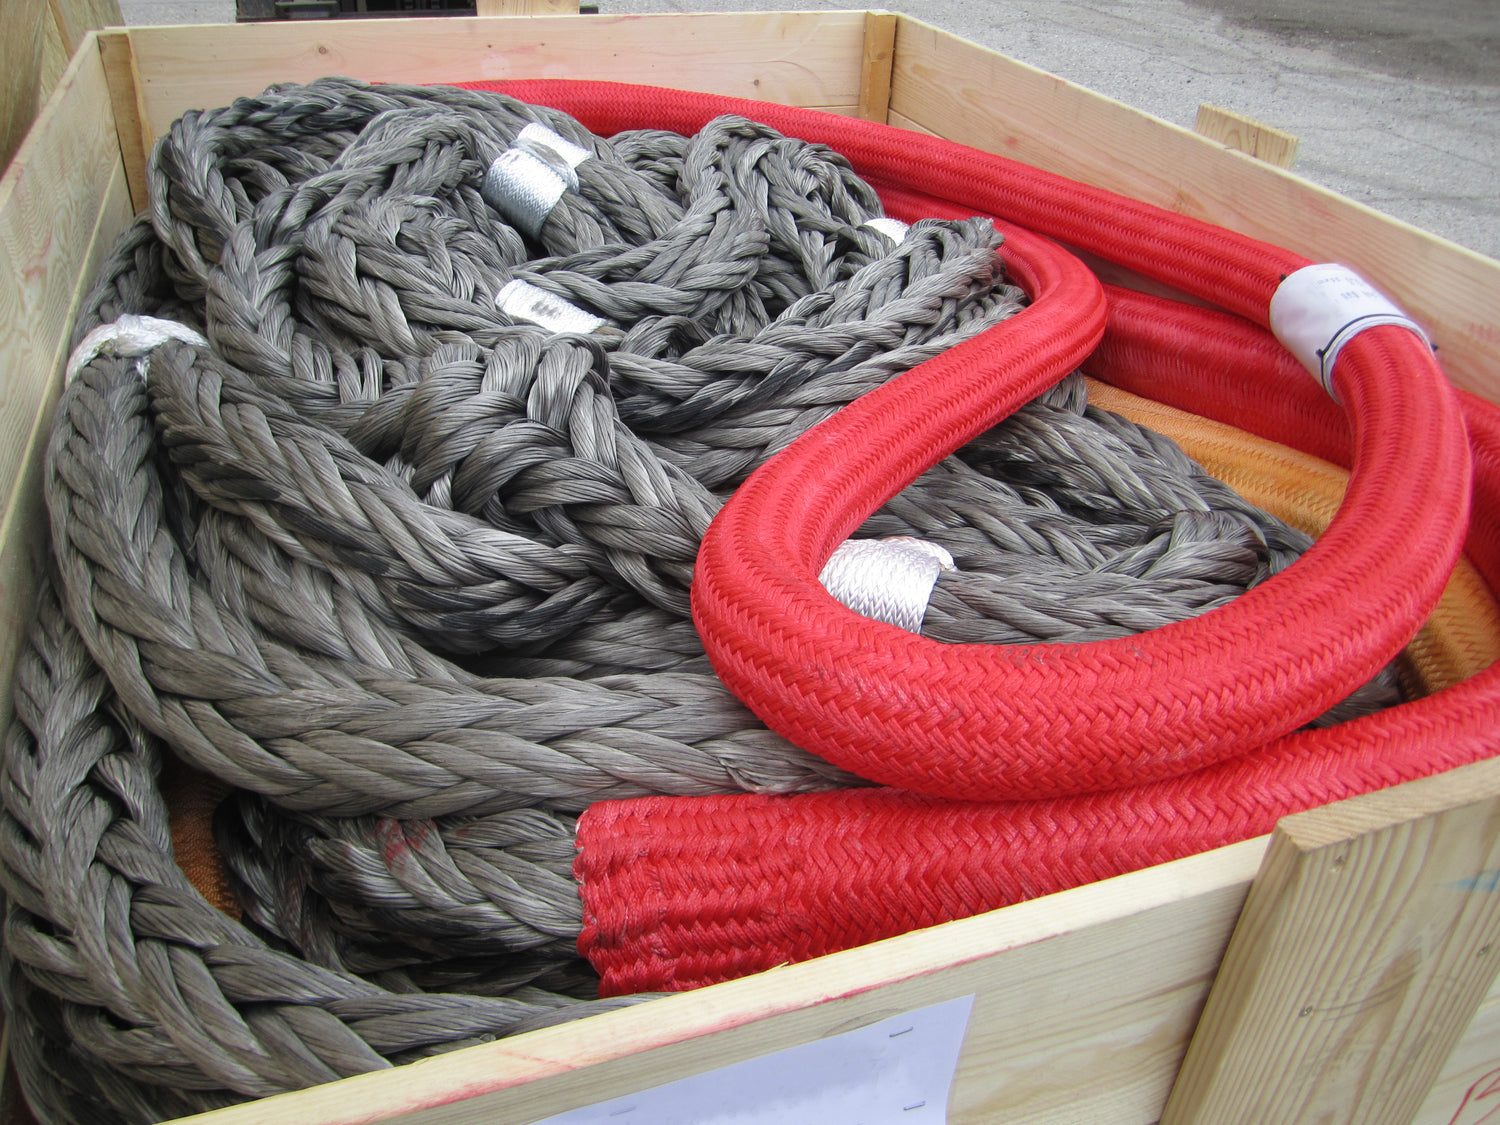 Dyneema rope in box